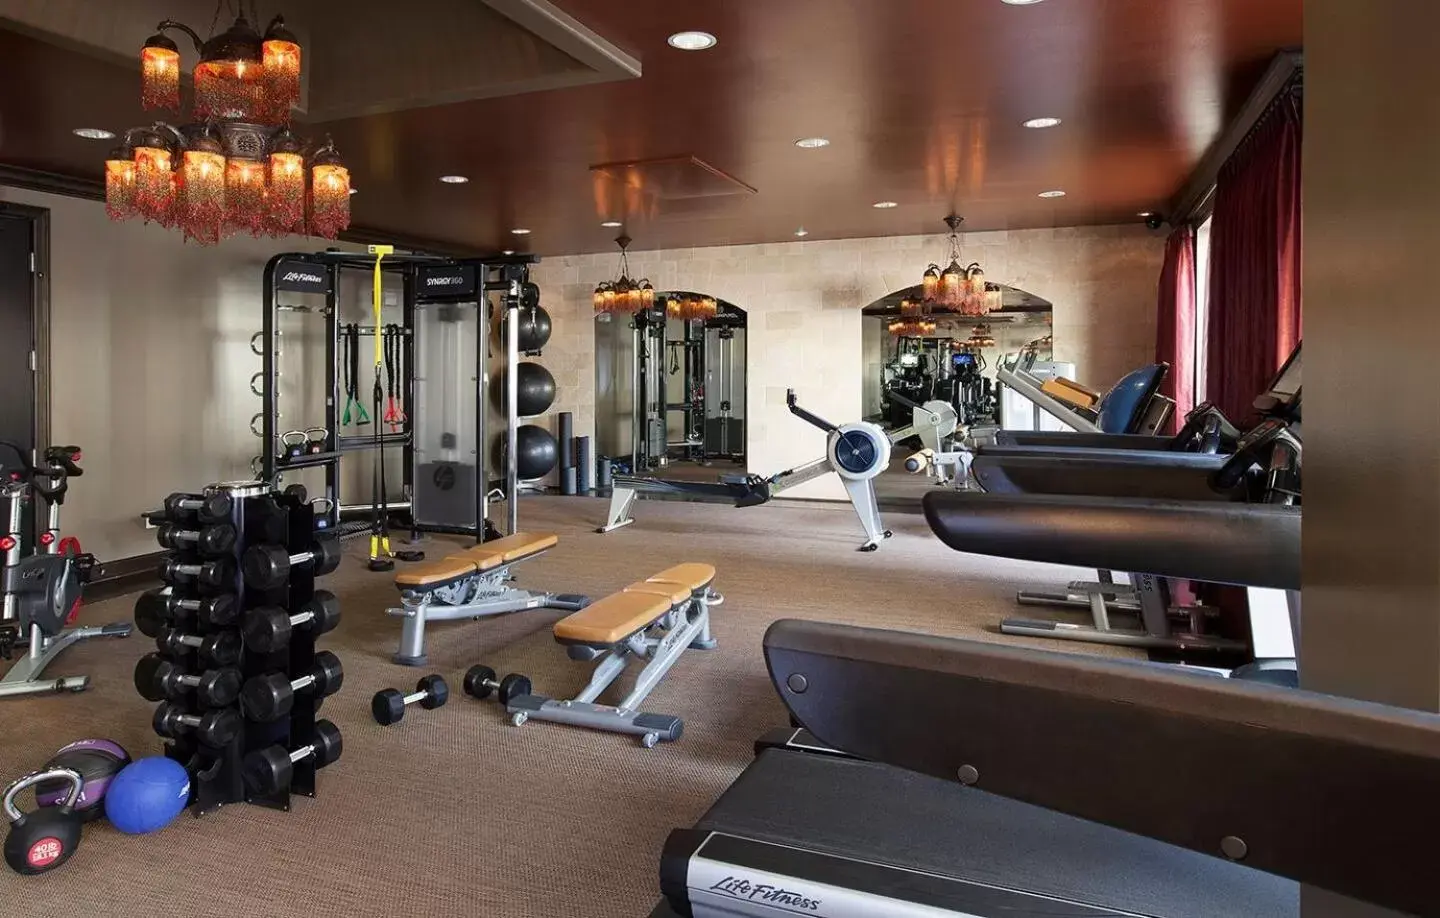 Fitness centre/facilities, Fitness Center/Facilities in Hotel ZaZa Dallas